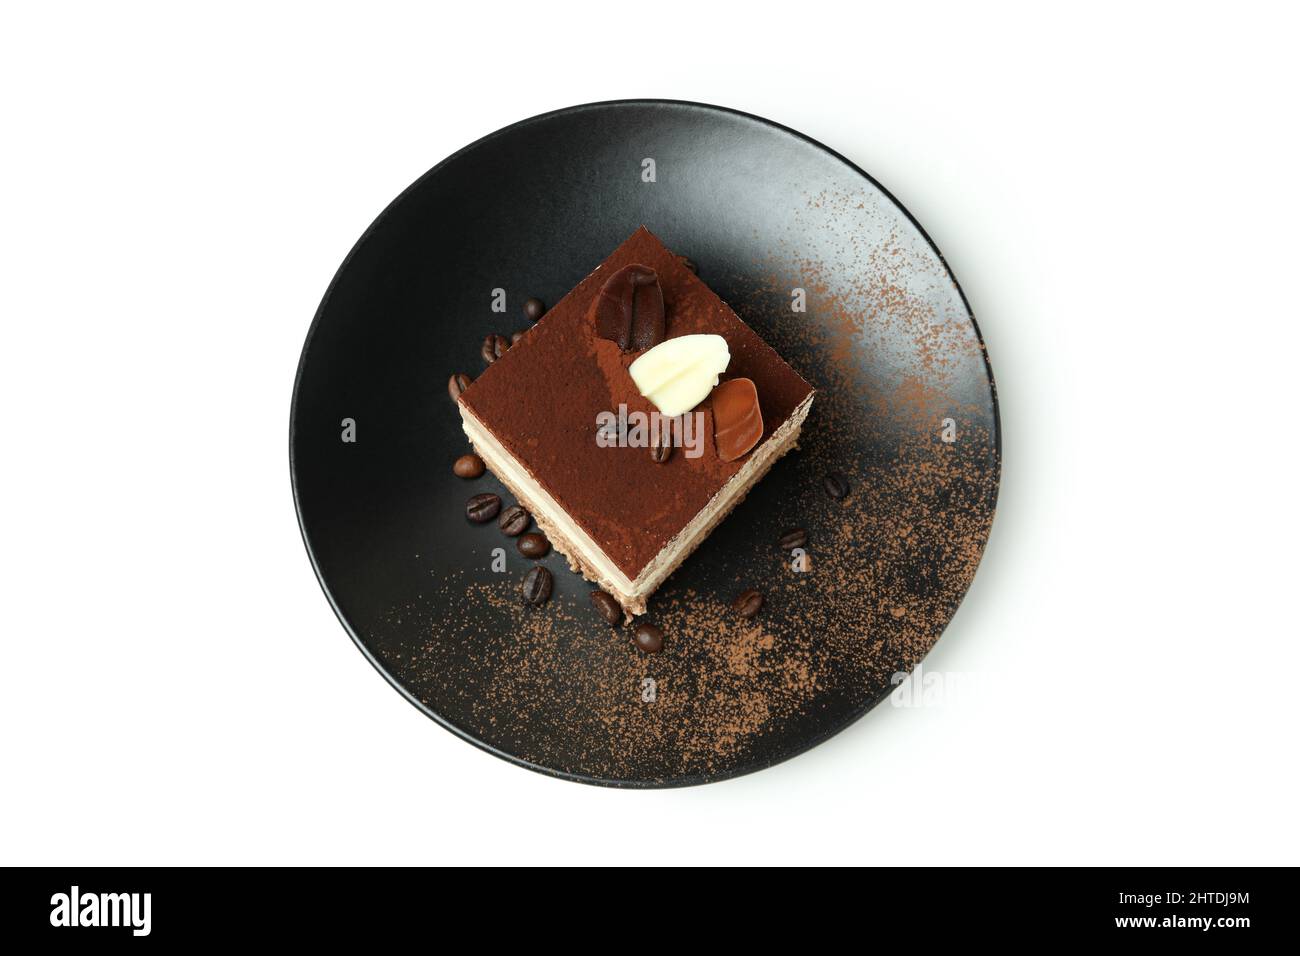 Plate with Tiramisu cake isolated on white background Stock Photo